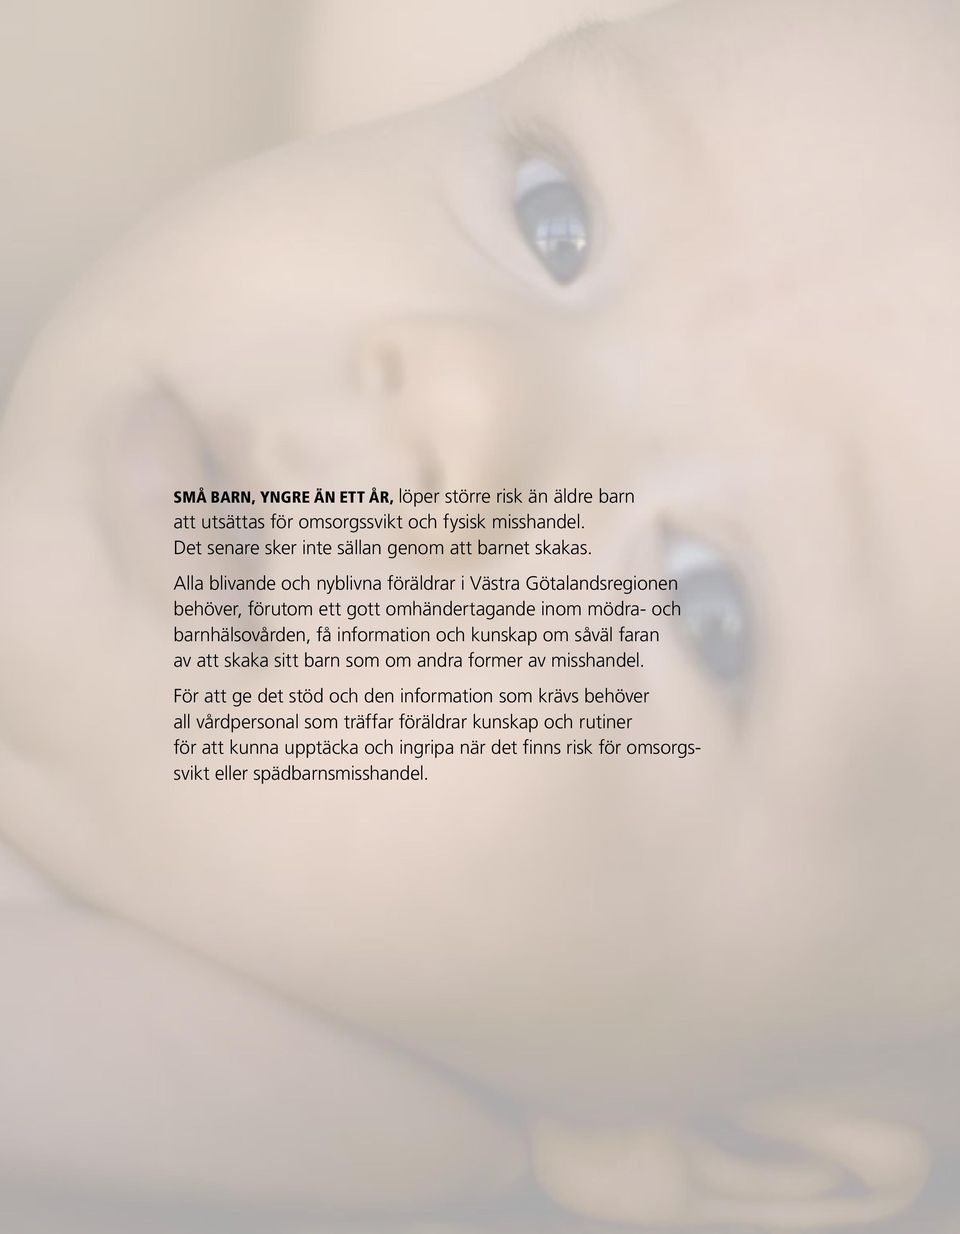 Alla blivande och nyblivna föräldrar i Västra Götalandsregionen behöver, förutom ett gott omhändertagande inom mödra- och barnhälsovården, få information